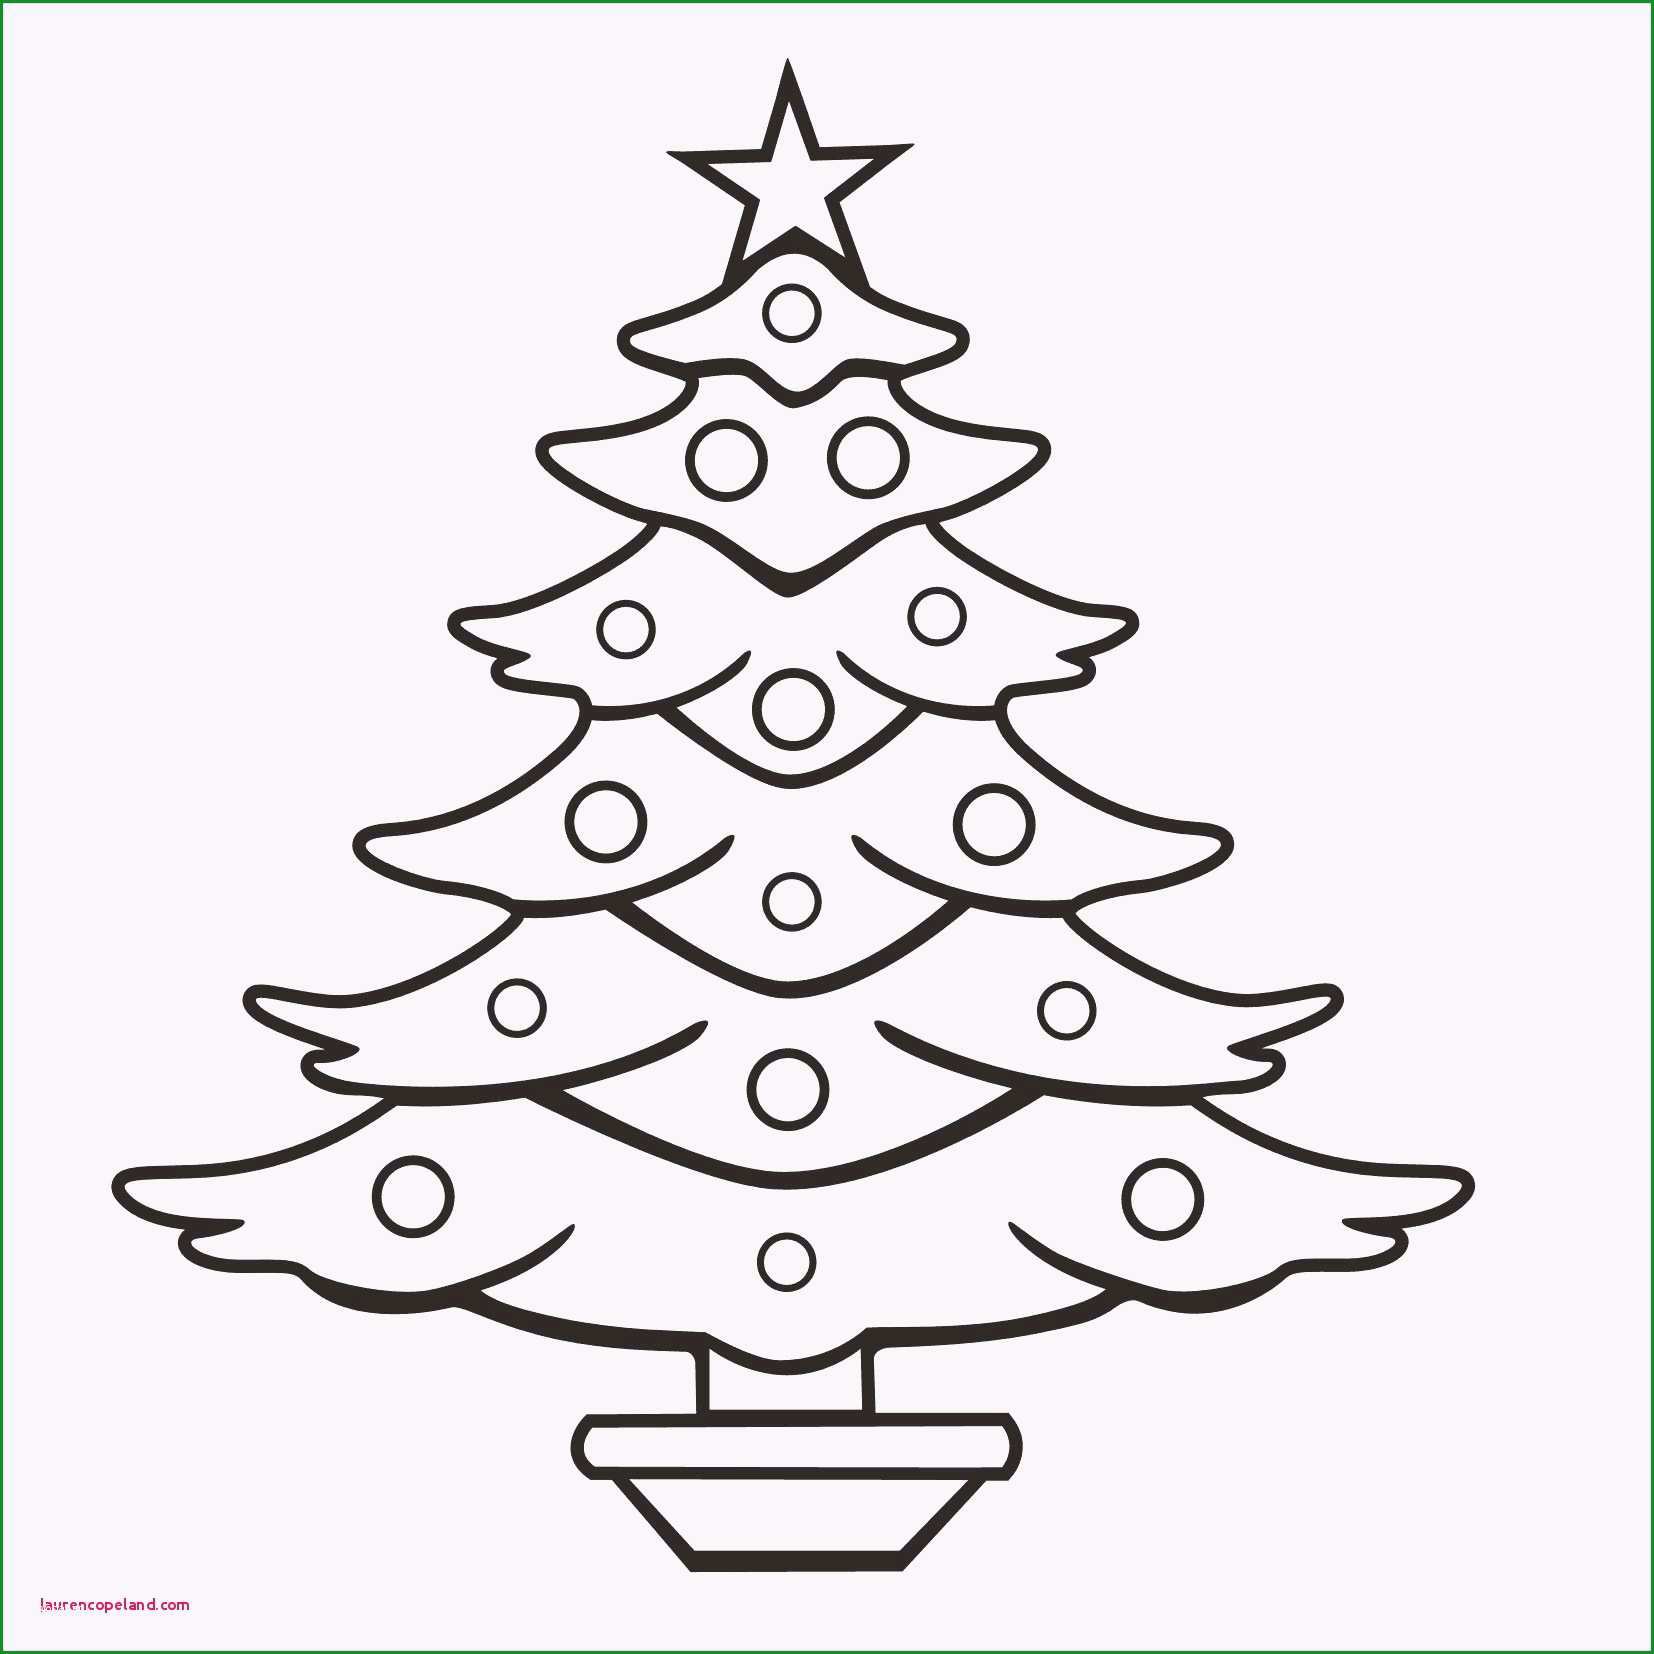 weihnachtsbaum ausschneiden vorlage tannenbaum basteln papier vorlage vorlagen zum ausschneiden